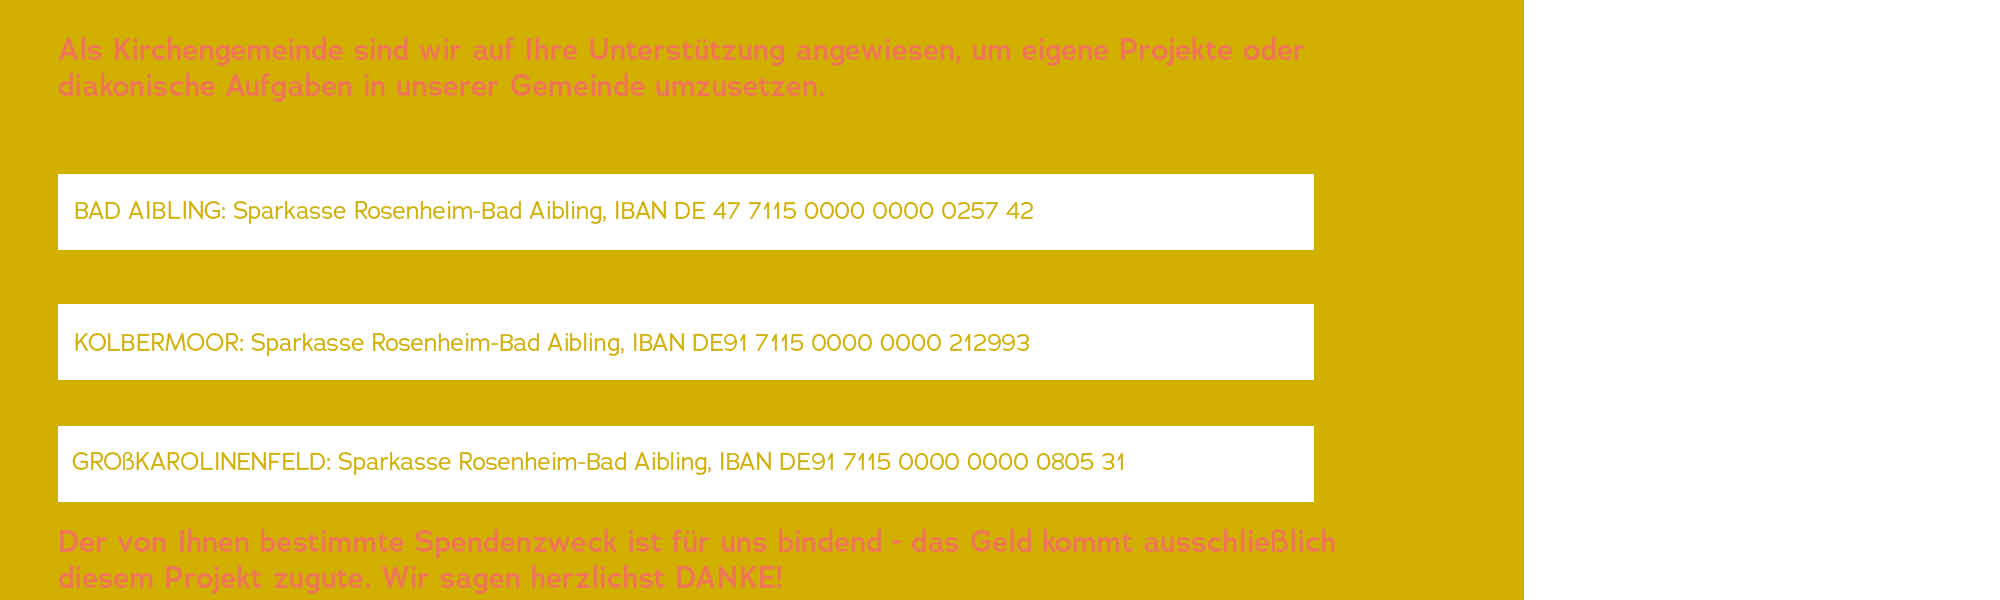 IBAN Nummern auf gelbem Hintergrund